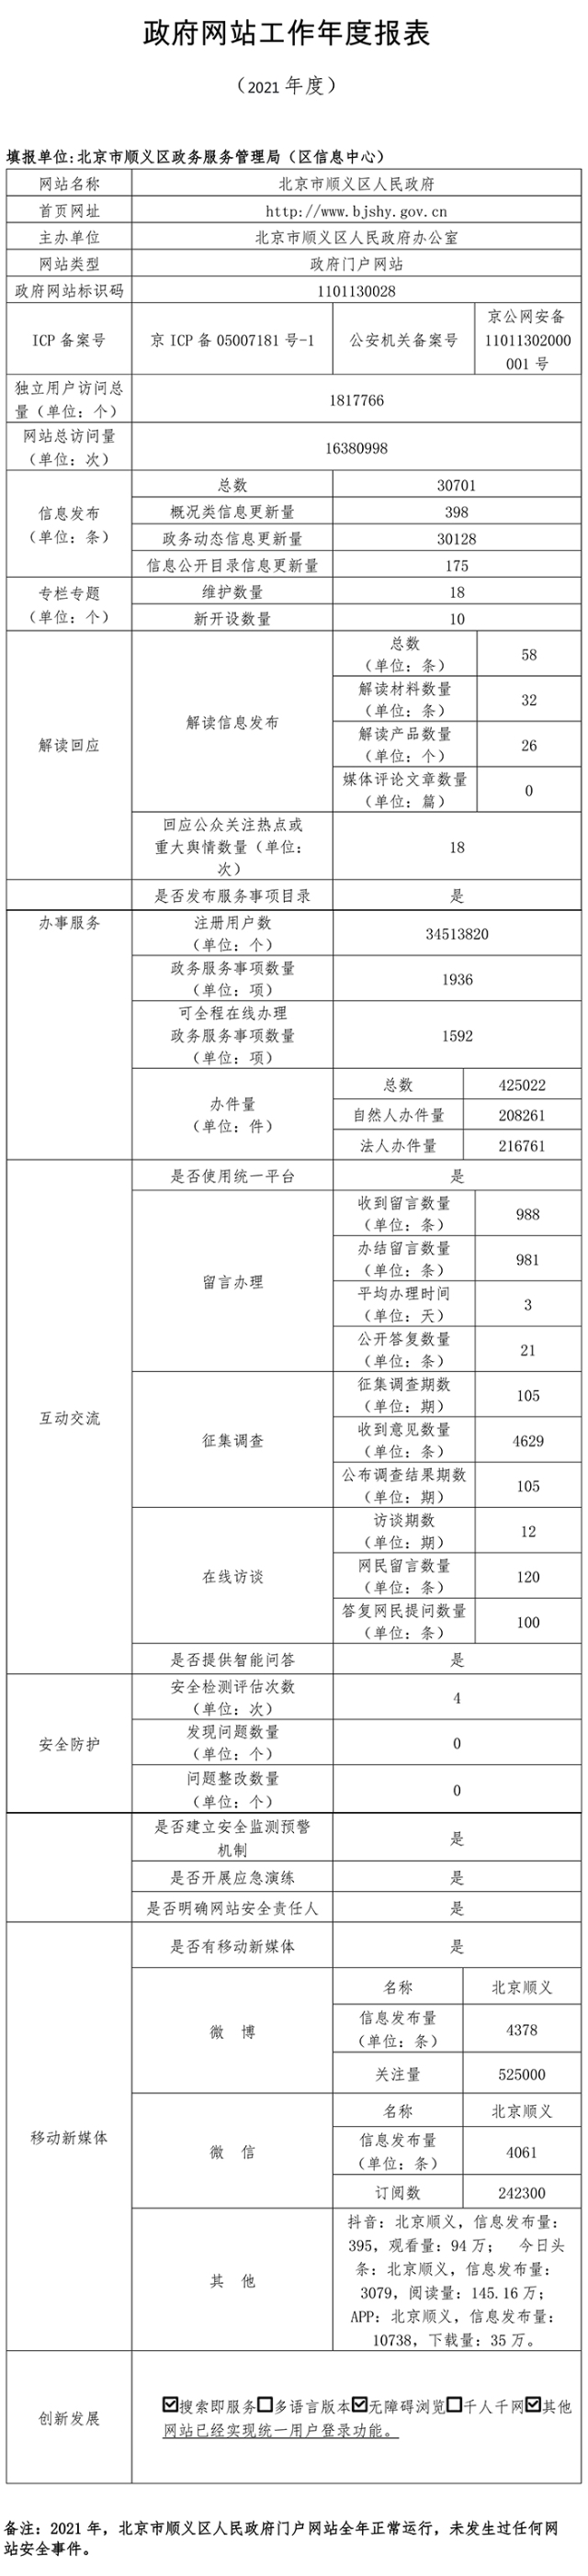 北京市顺义区人民政府2021年政府网站年度工作报表